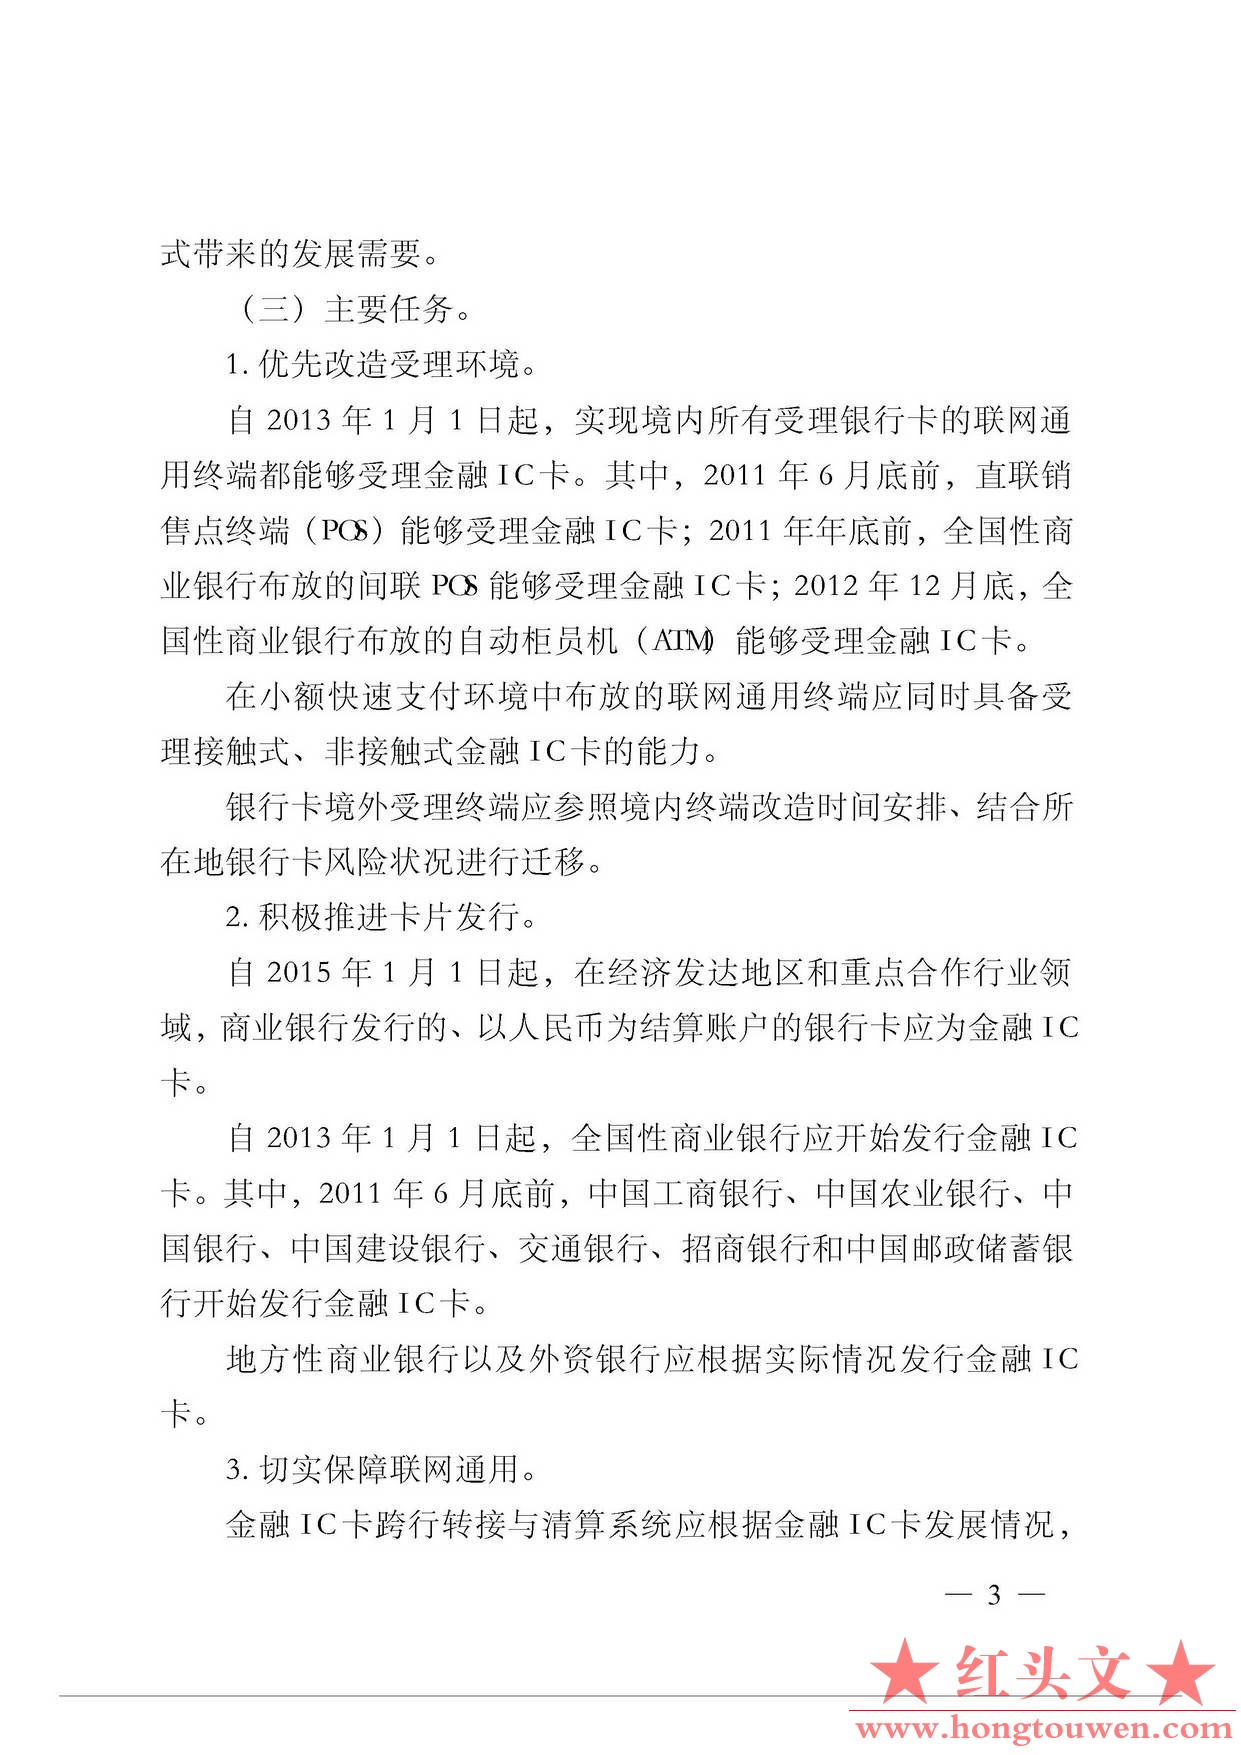 银发[2011]64号-中国人民银行关于推进金融IC卡应用工作的意见_页面_3.jpg.jpg